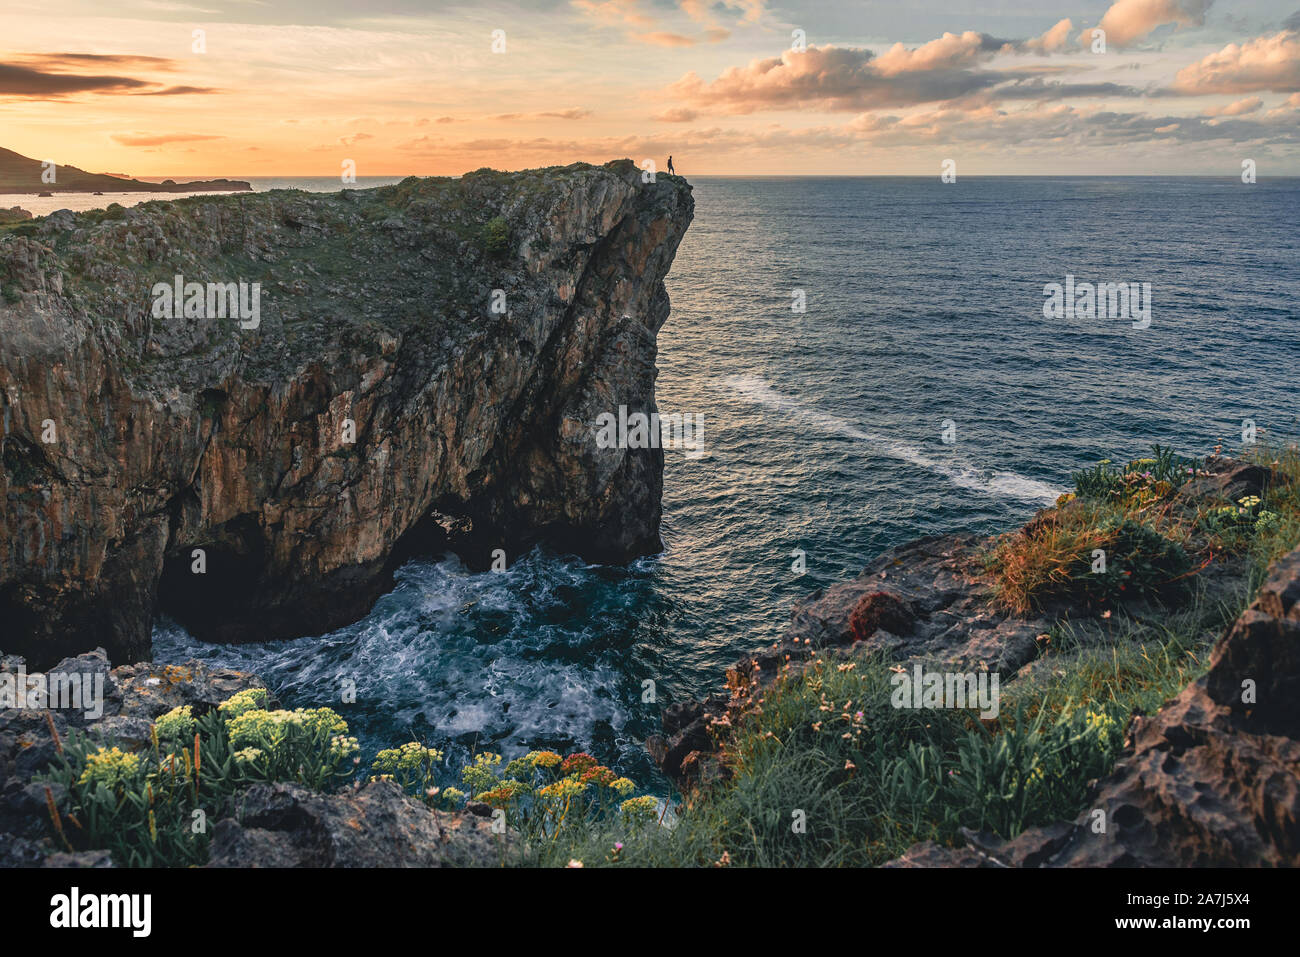 Paisaje con la silueta de un hombre parado en el borde del acantilado en la costa del mar en el norte de España, Asturias, Europa en colorido atardecer en verano Foto de stock